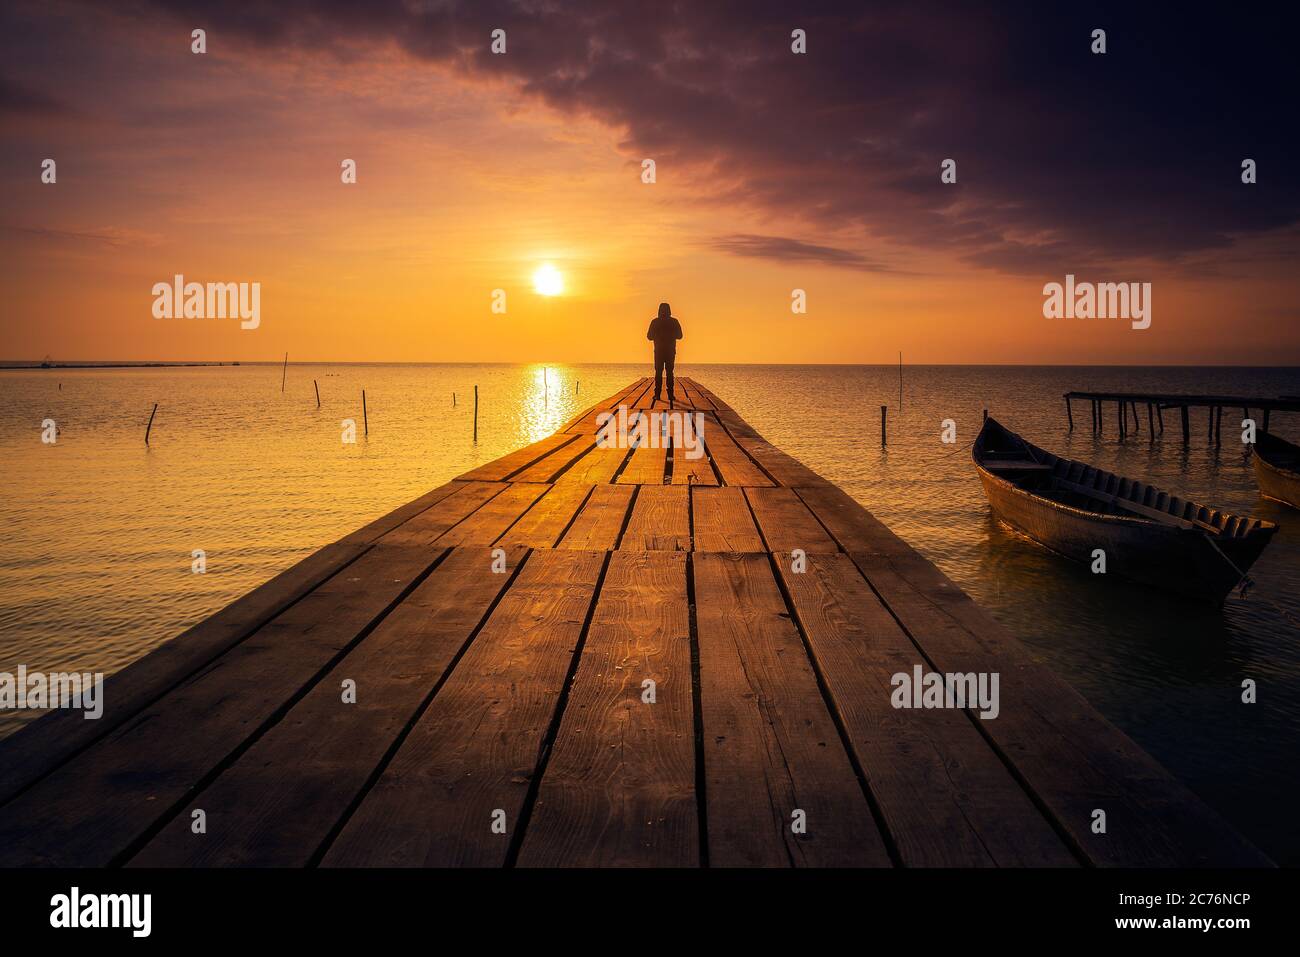 Personne seule debout sur un ponton méditant et appréciant le lever ou le  coucher du soleil sur un lac avec un bateau de pêche sur le lac Photo Stock  - Alamy